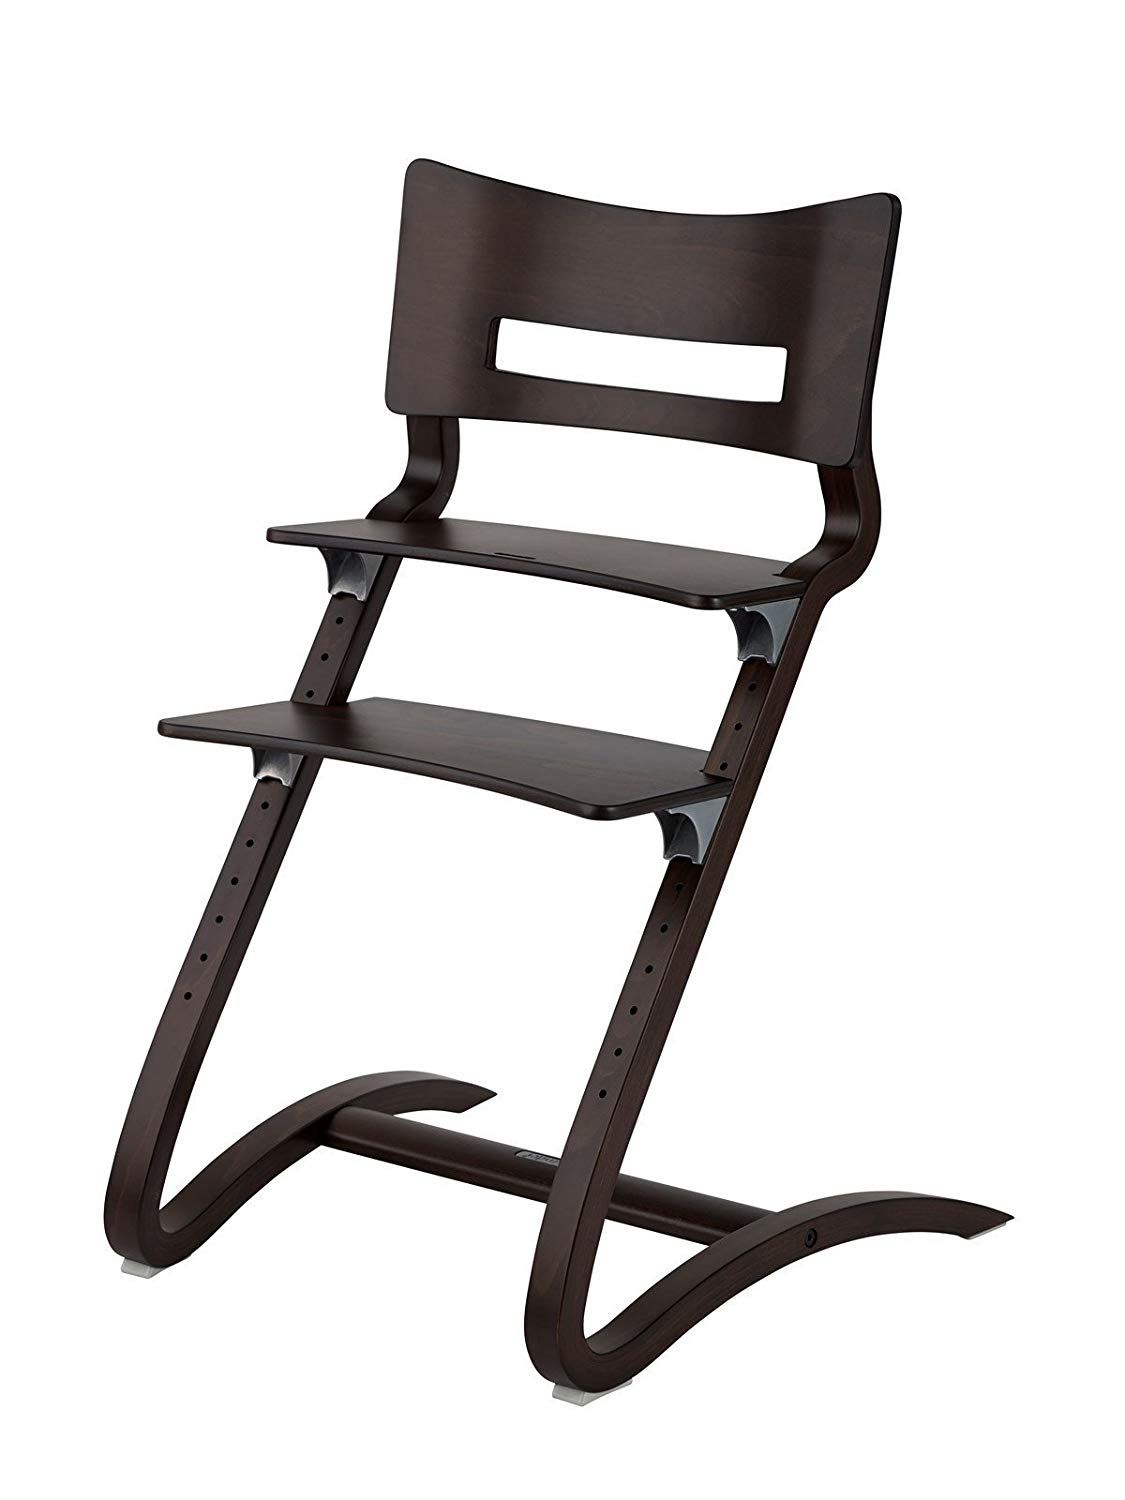 Leander High Chair Natural